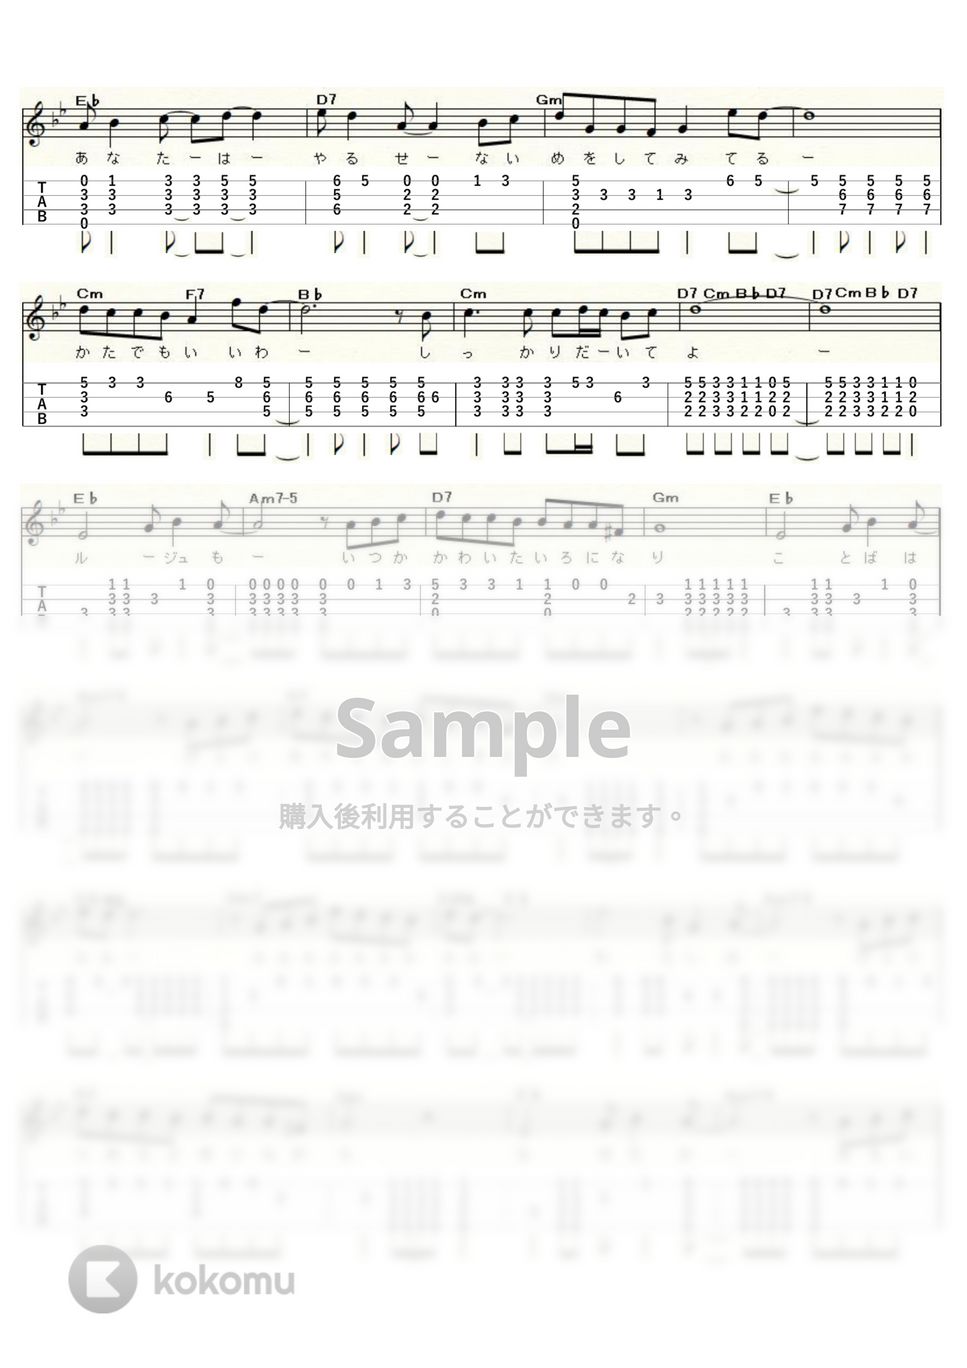 岩崎宏美 - シンデレラハネムーン (ｳｸﾚﾚｿﾛ / High-G,Low-G / 中～上級) by ukulelepapa